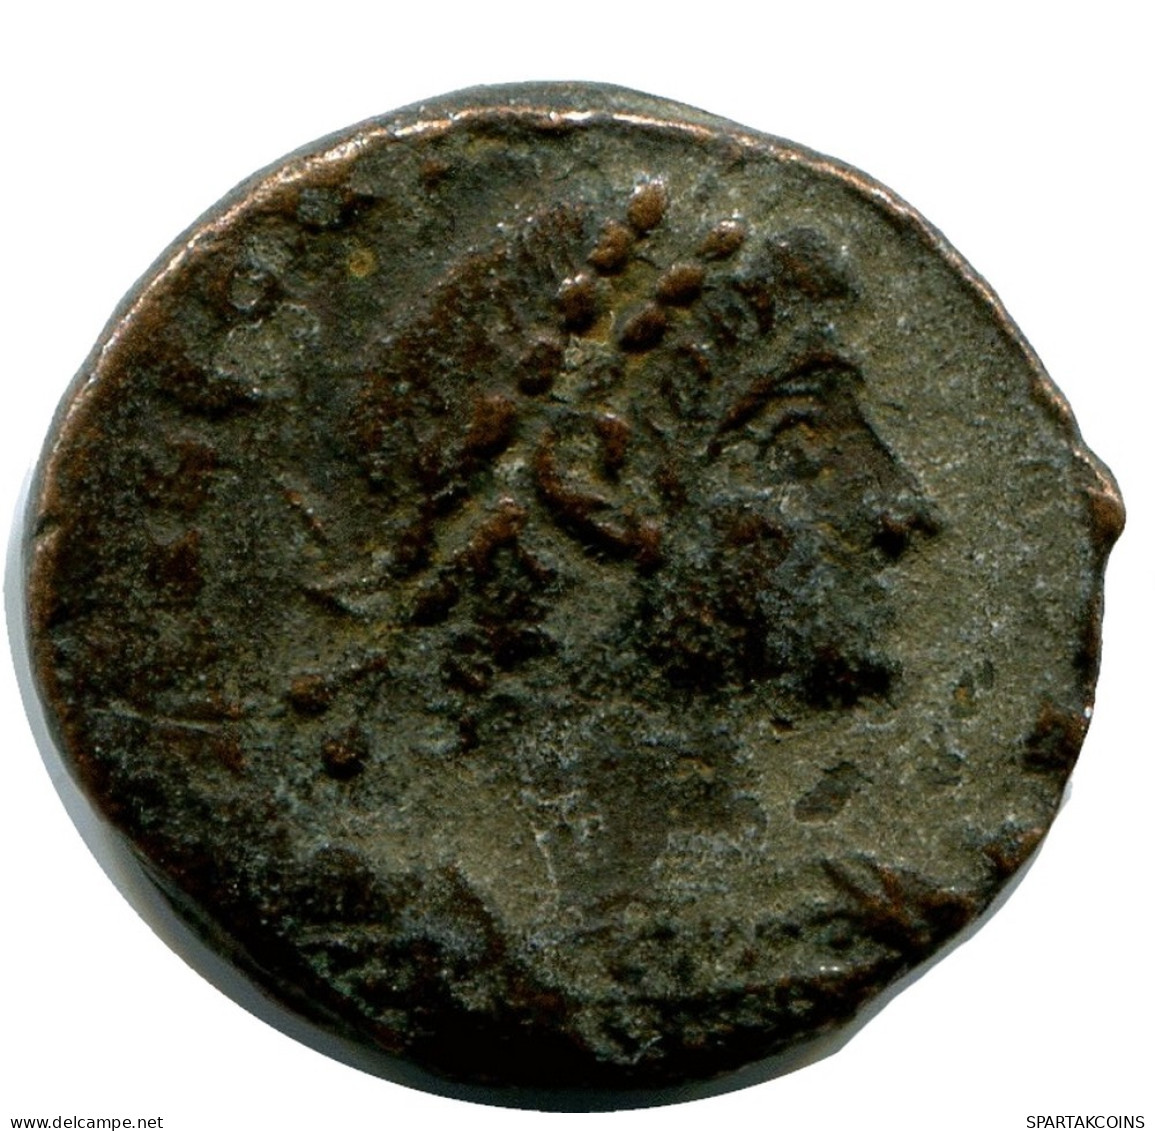 ROMAN Coin MINTED IN ALEKSANDRIA FOUND IN IHNASYAH HOARD EGYPT #ANC10185.14.U.A - Der Christlischen Kaiser (307 / 363)